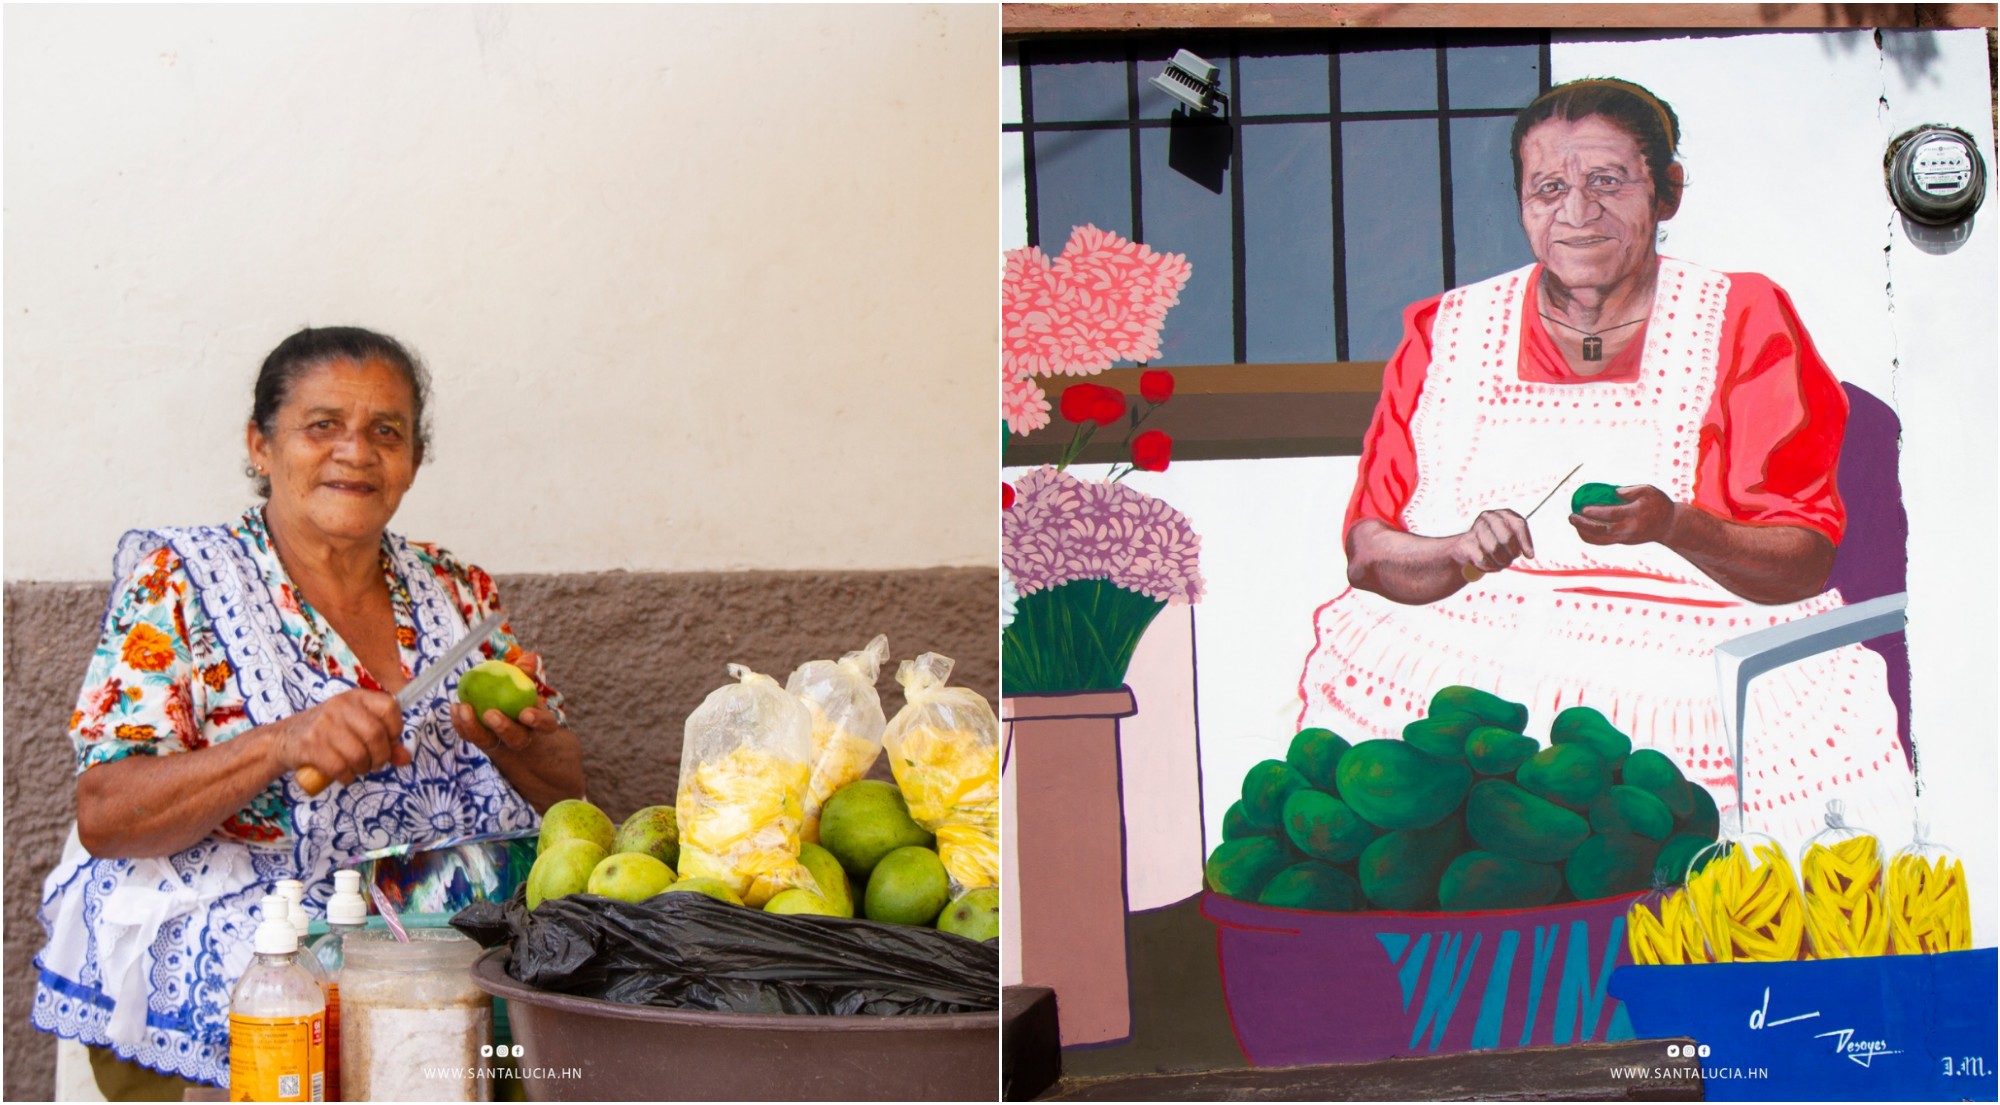 Rinden homenaje a hondureña por su venta de mangos en Santa Lucía